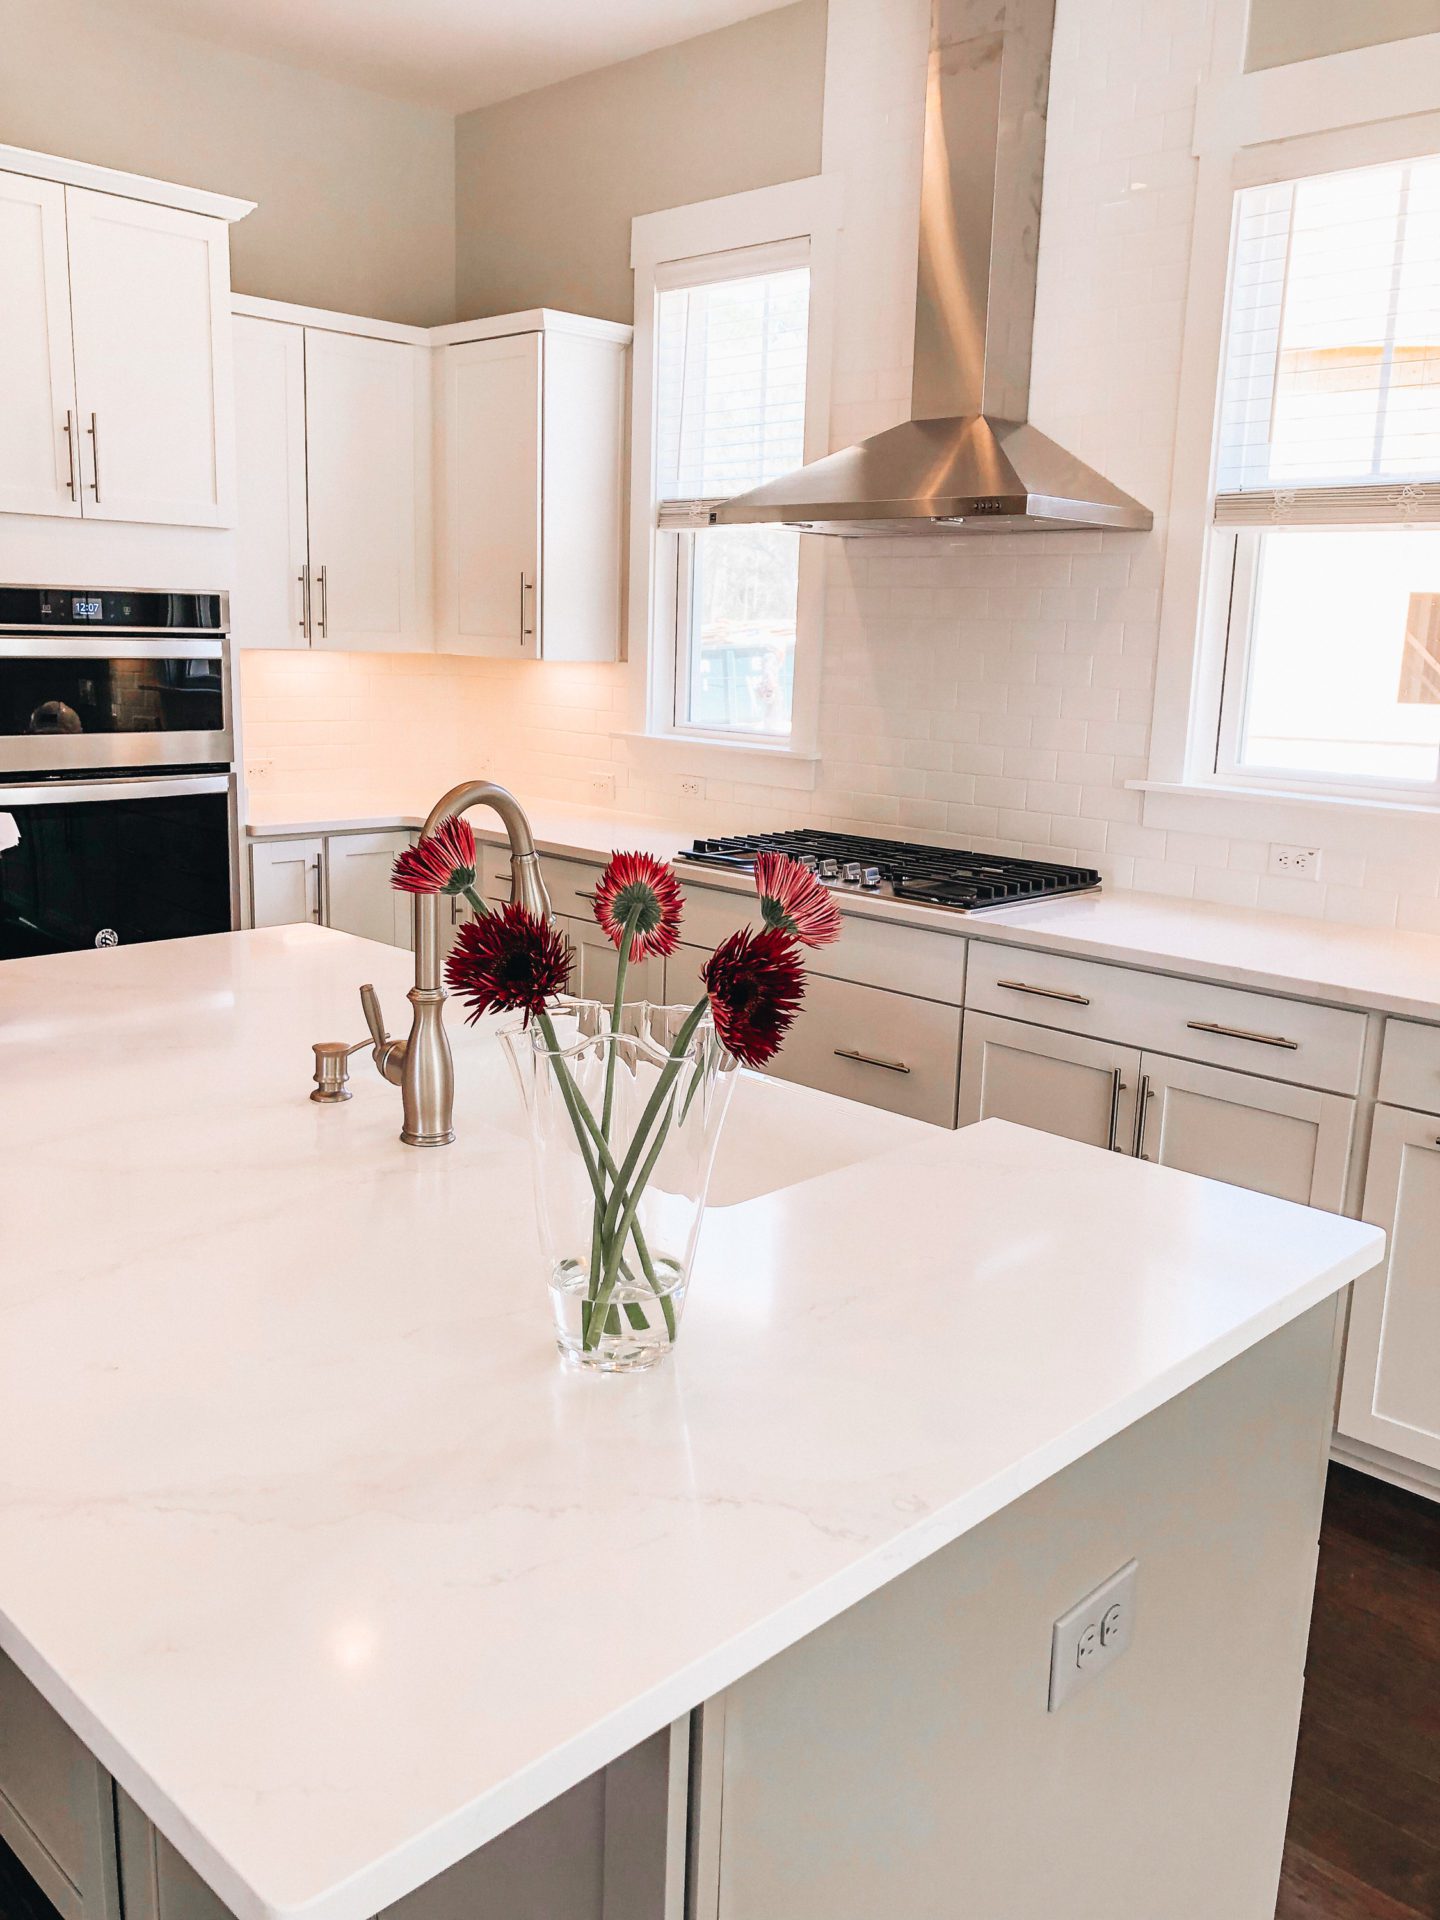 White kitchen cabinets & quartz countertops